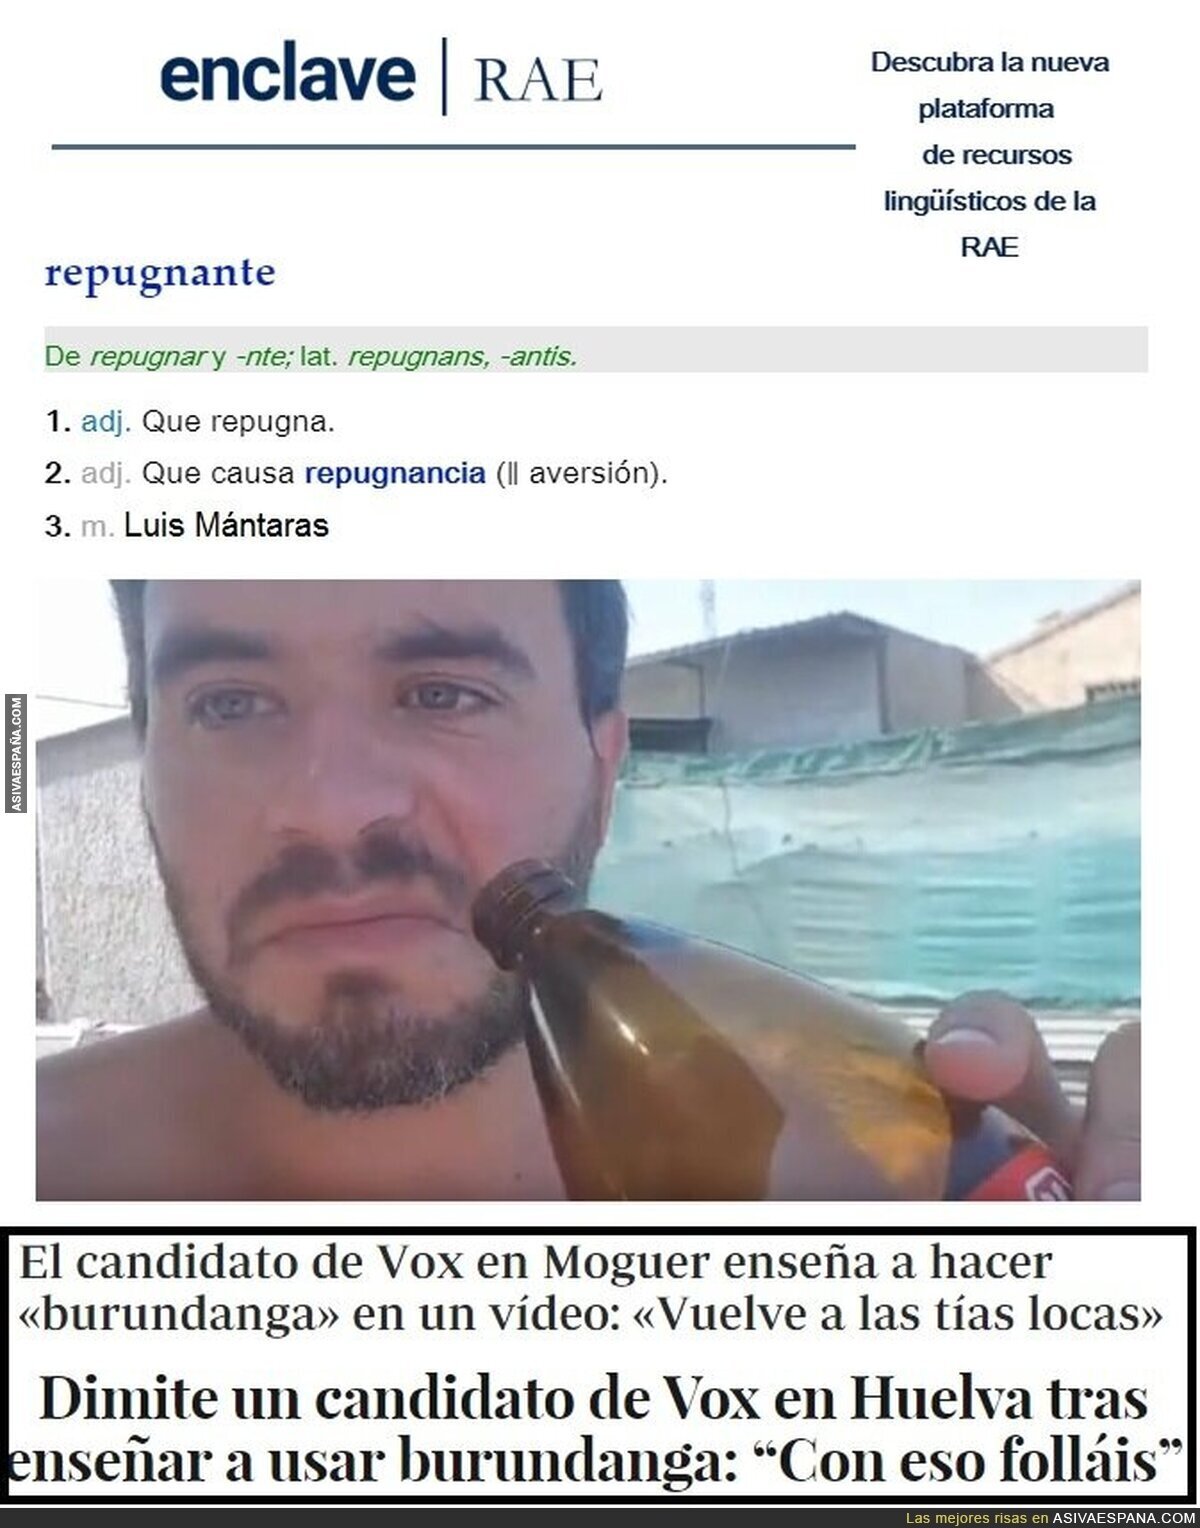 REPUGNANTE: el ex-candidato de Vox en Moguer que trapichea con burundanga (y luego dice que era broma...)